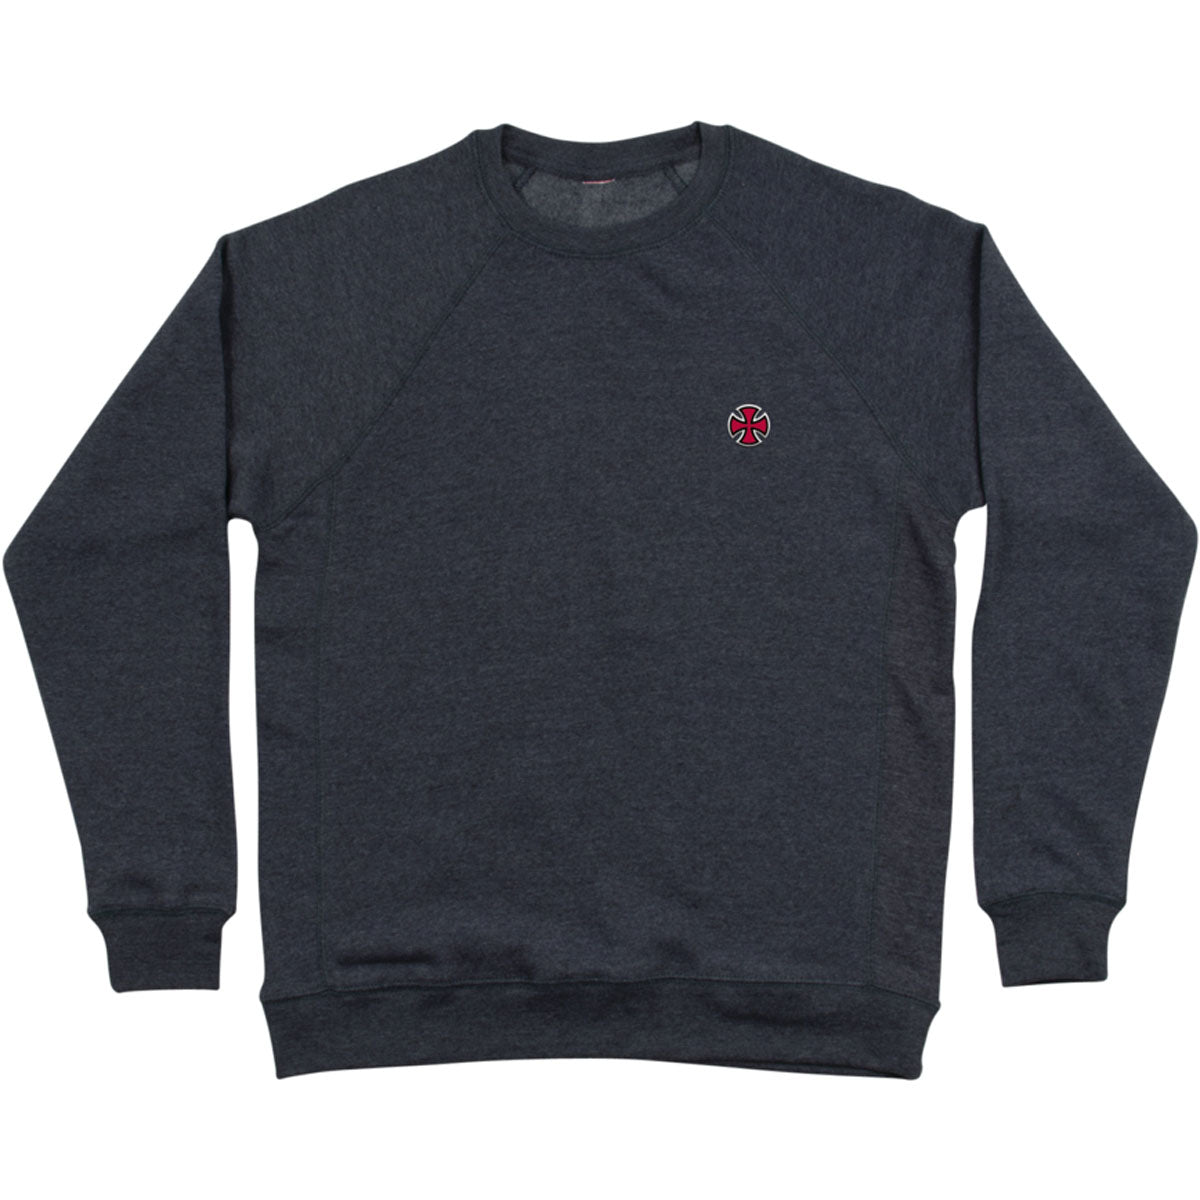 Independent Cross Crew Neck Men's Sweater Sweatshirts - Black